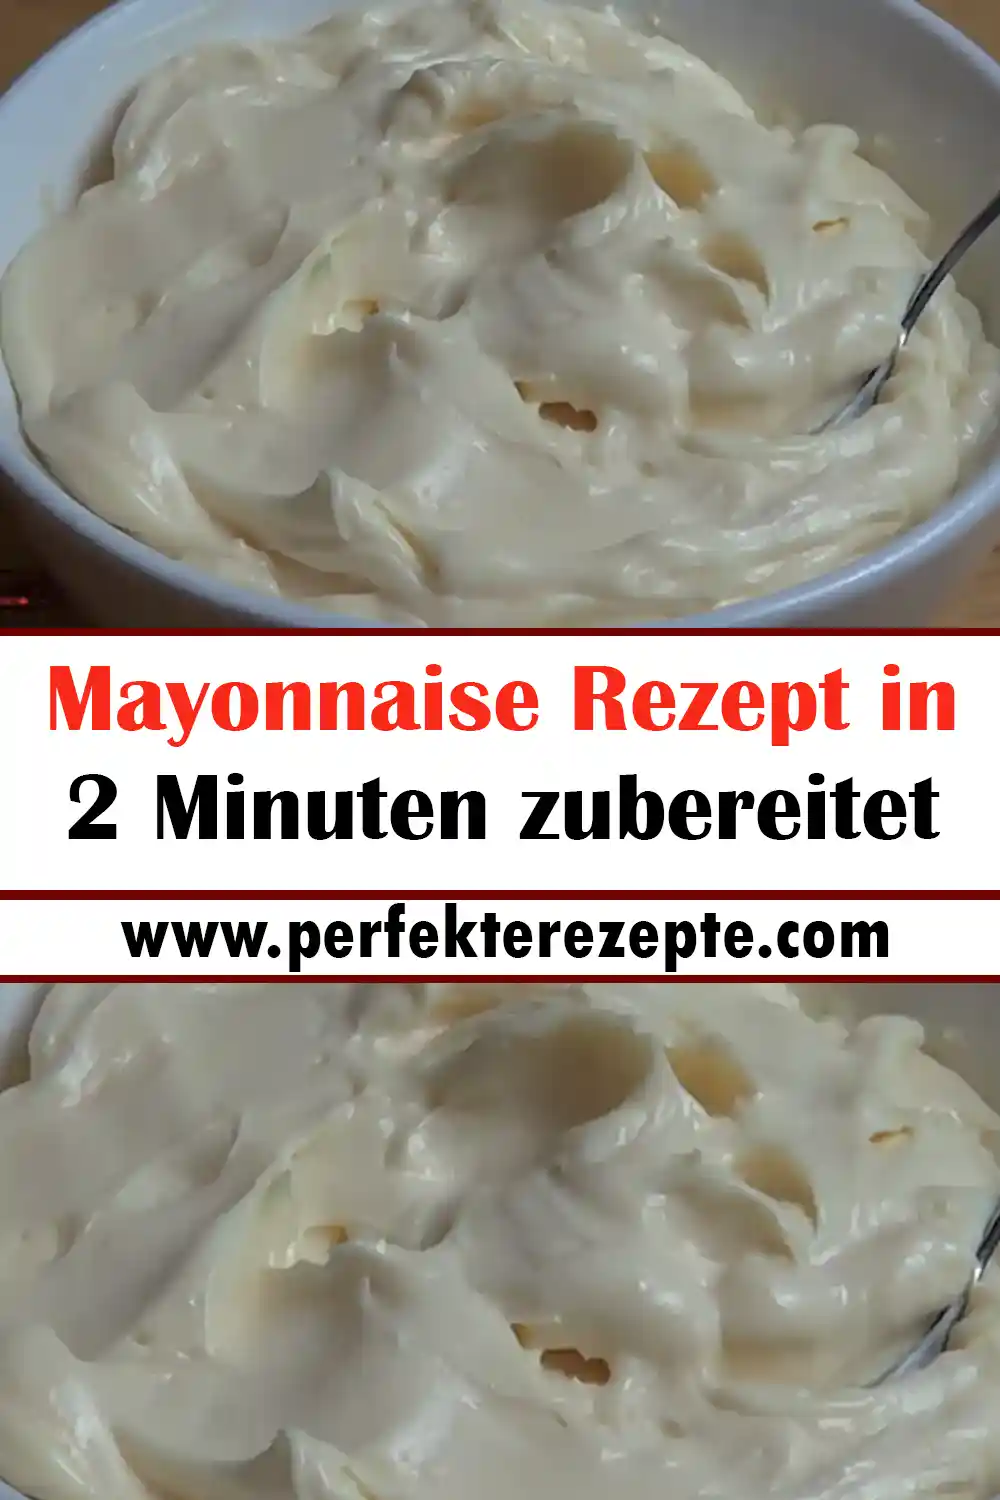 Mayonnaise Rezept in 2 Minuten zubereitet